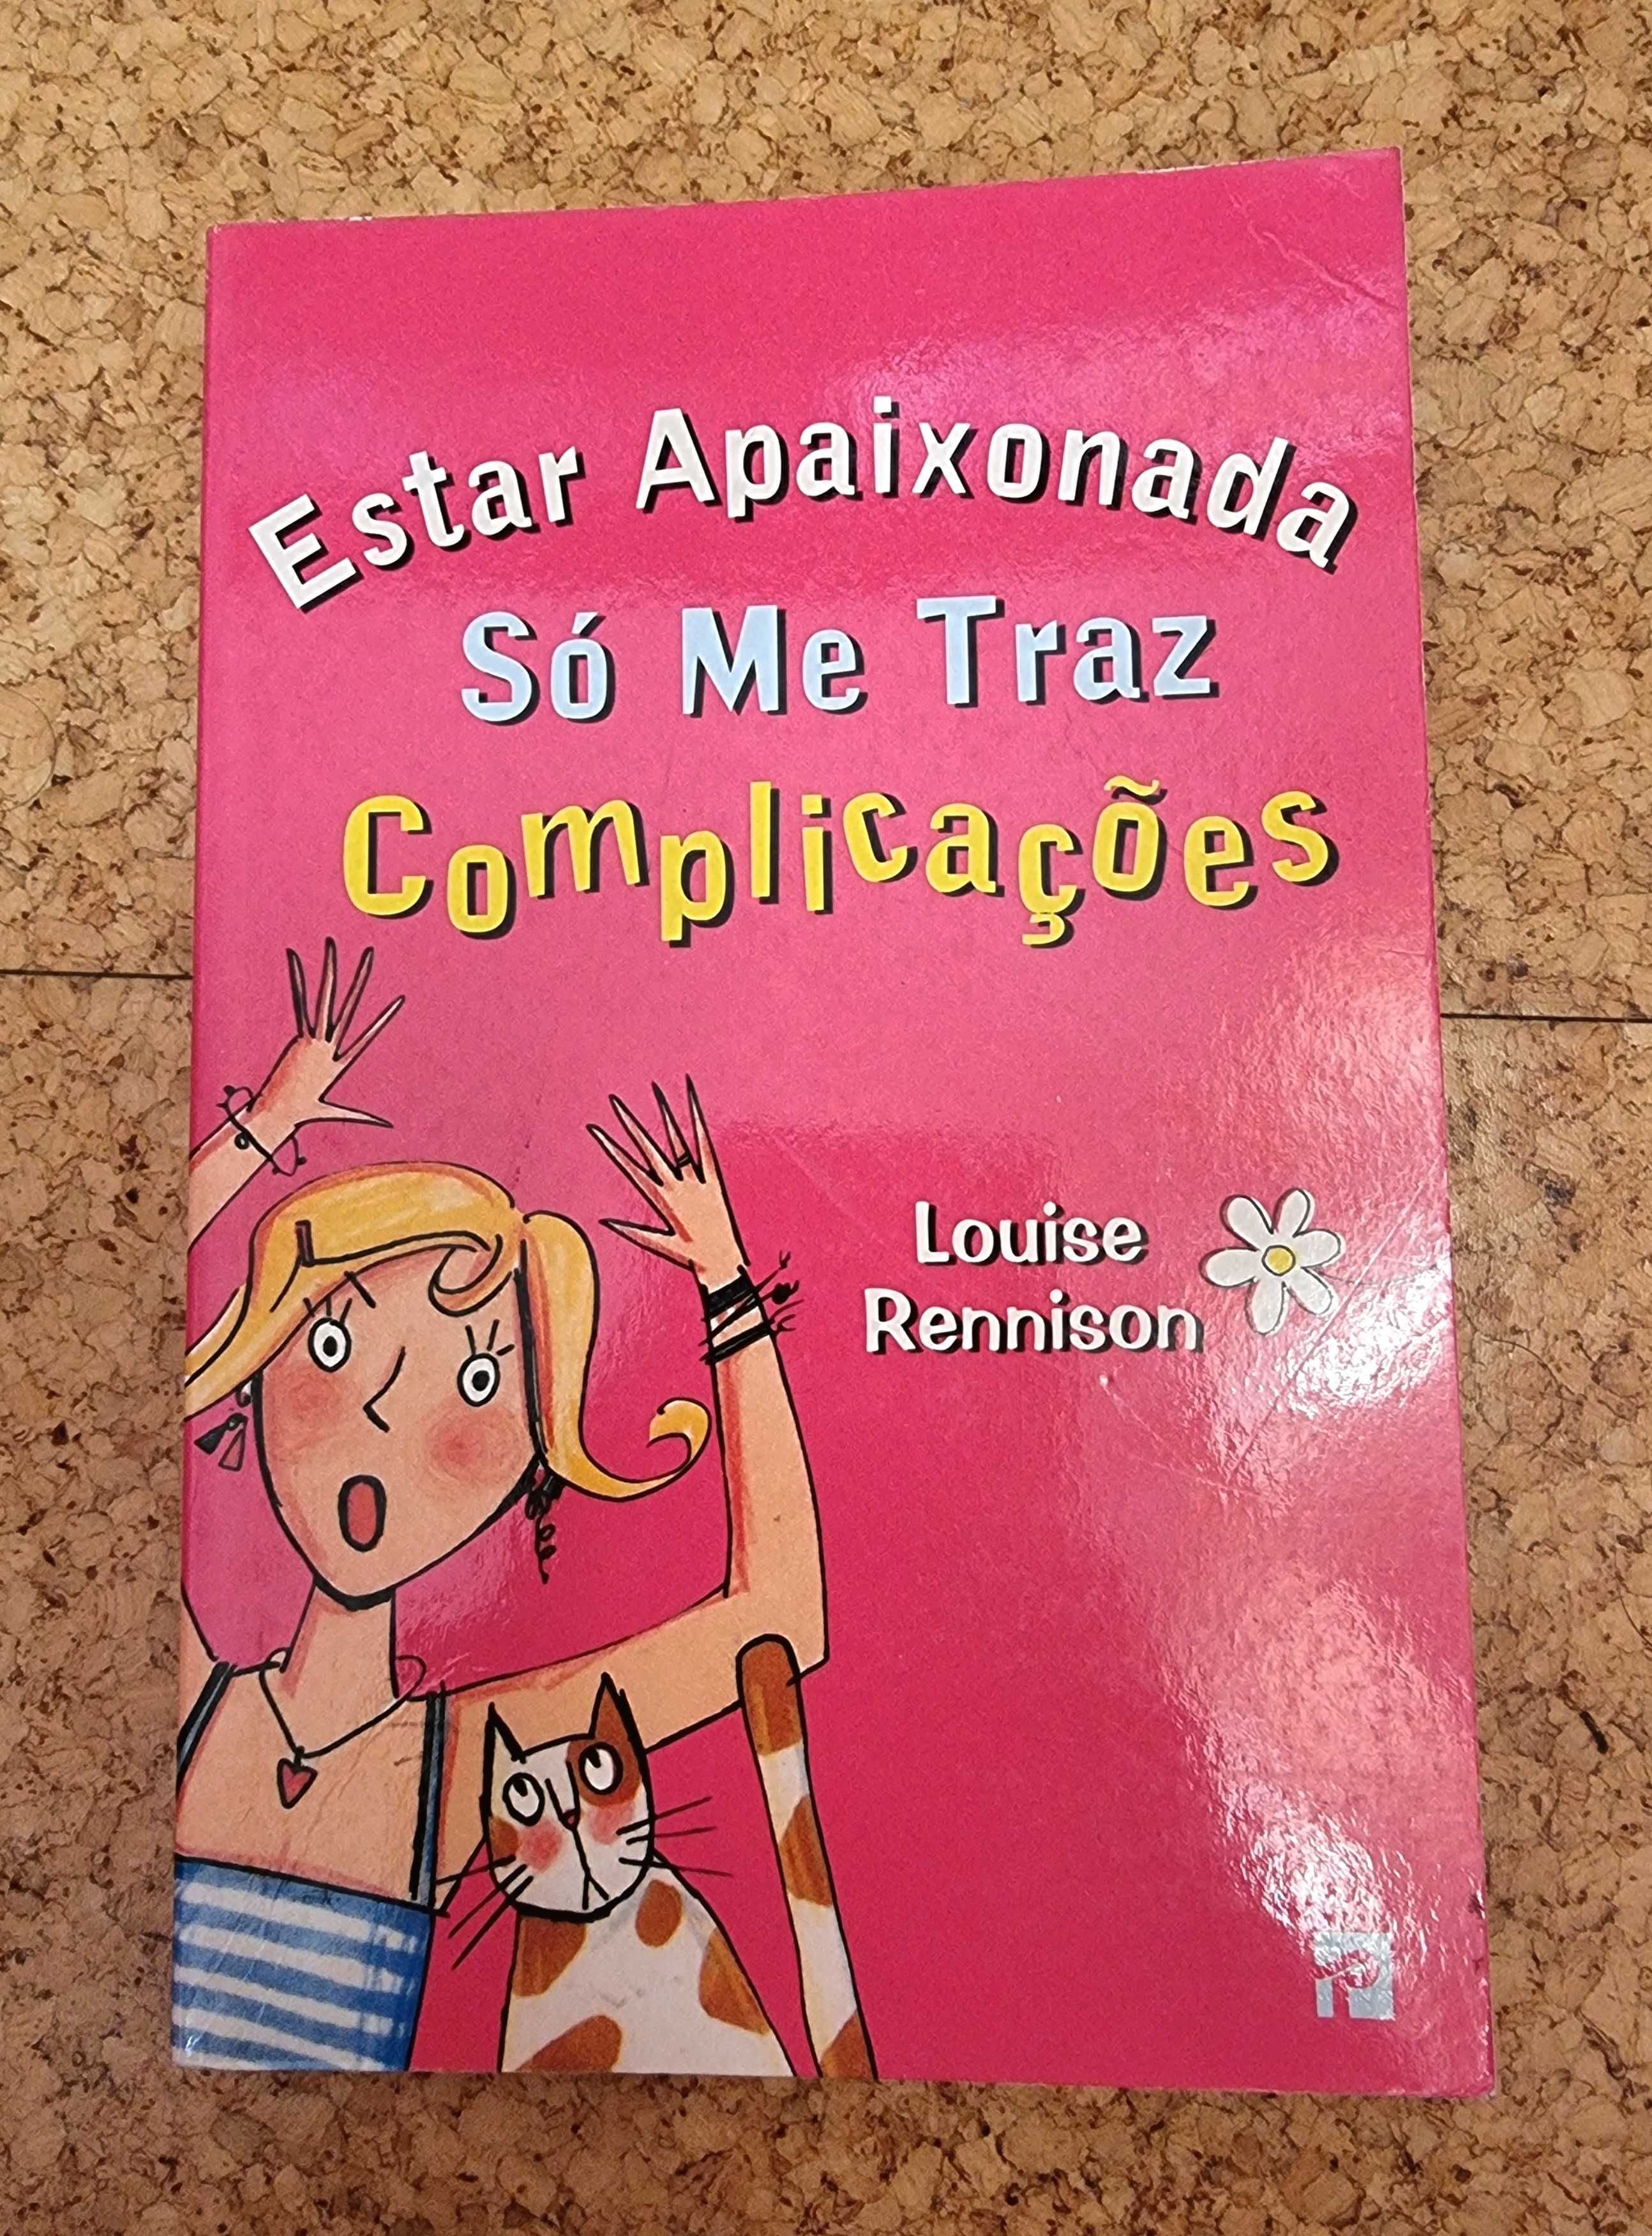 Livro "Estar Apaixonada só me Traz Complicações" de Louise Rennison